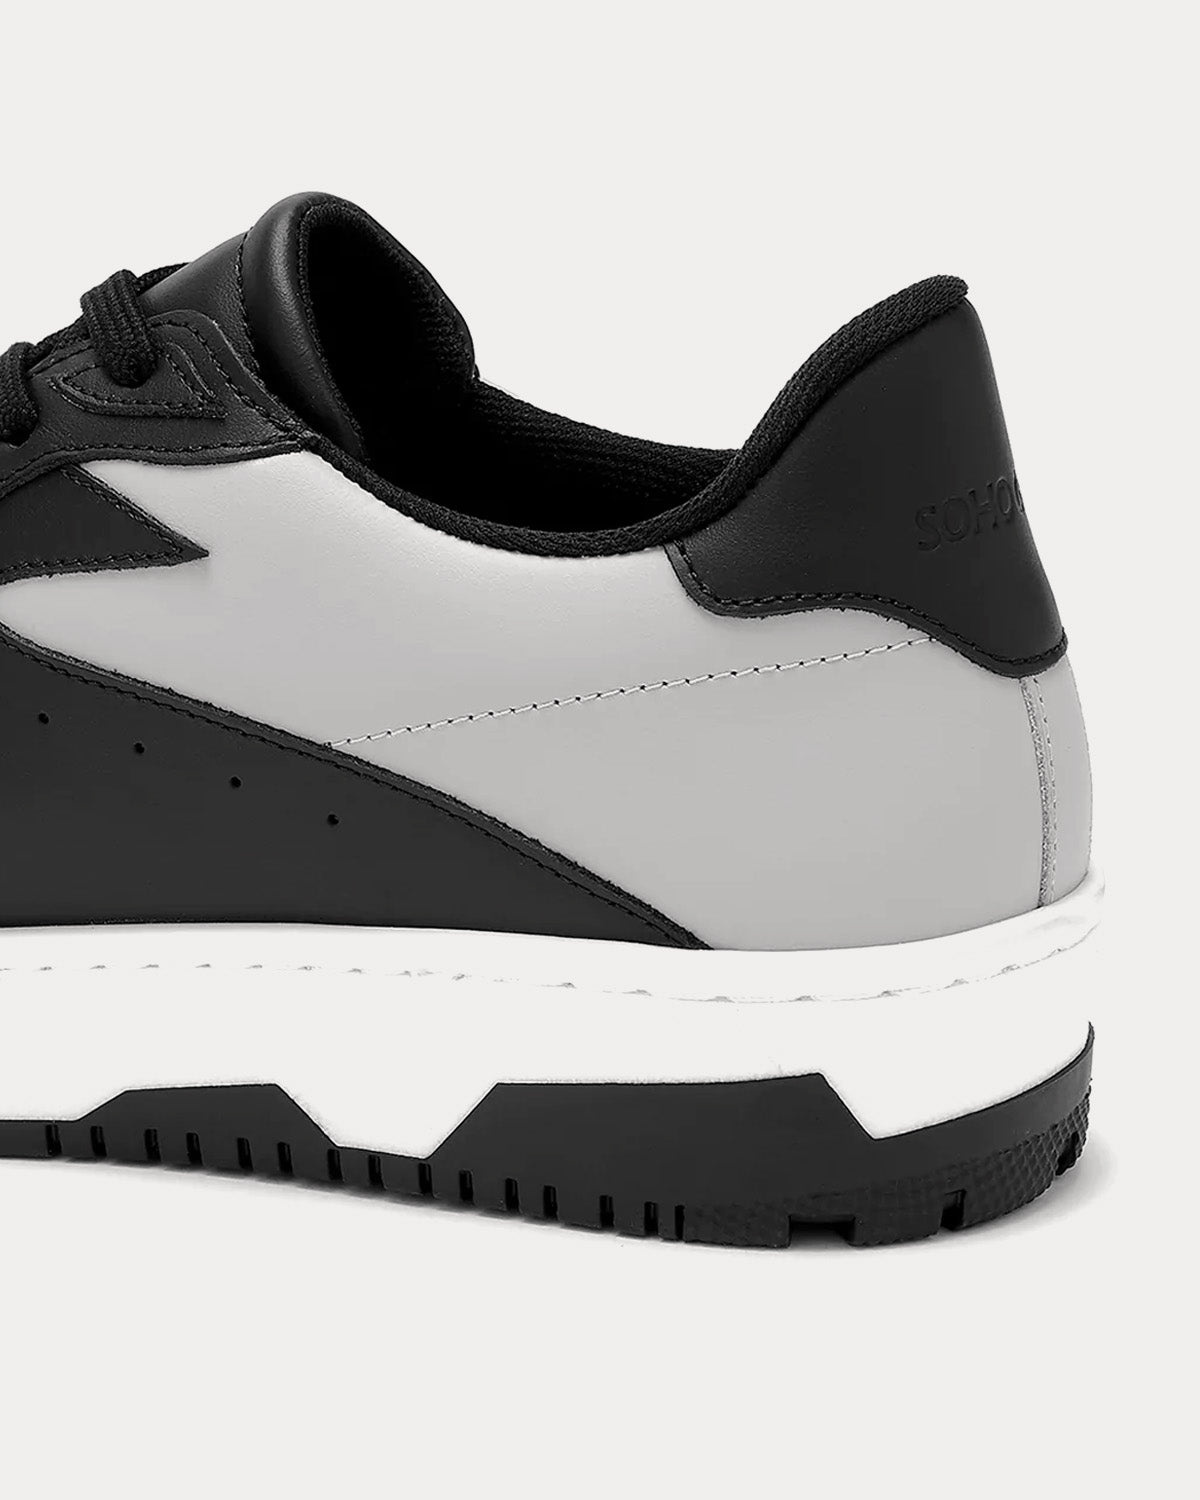 Soho Grit - Crosby Black / Grey / White Low Top Sneakers